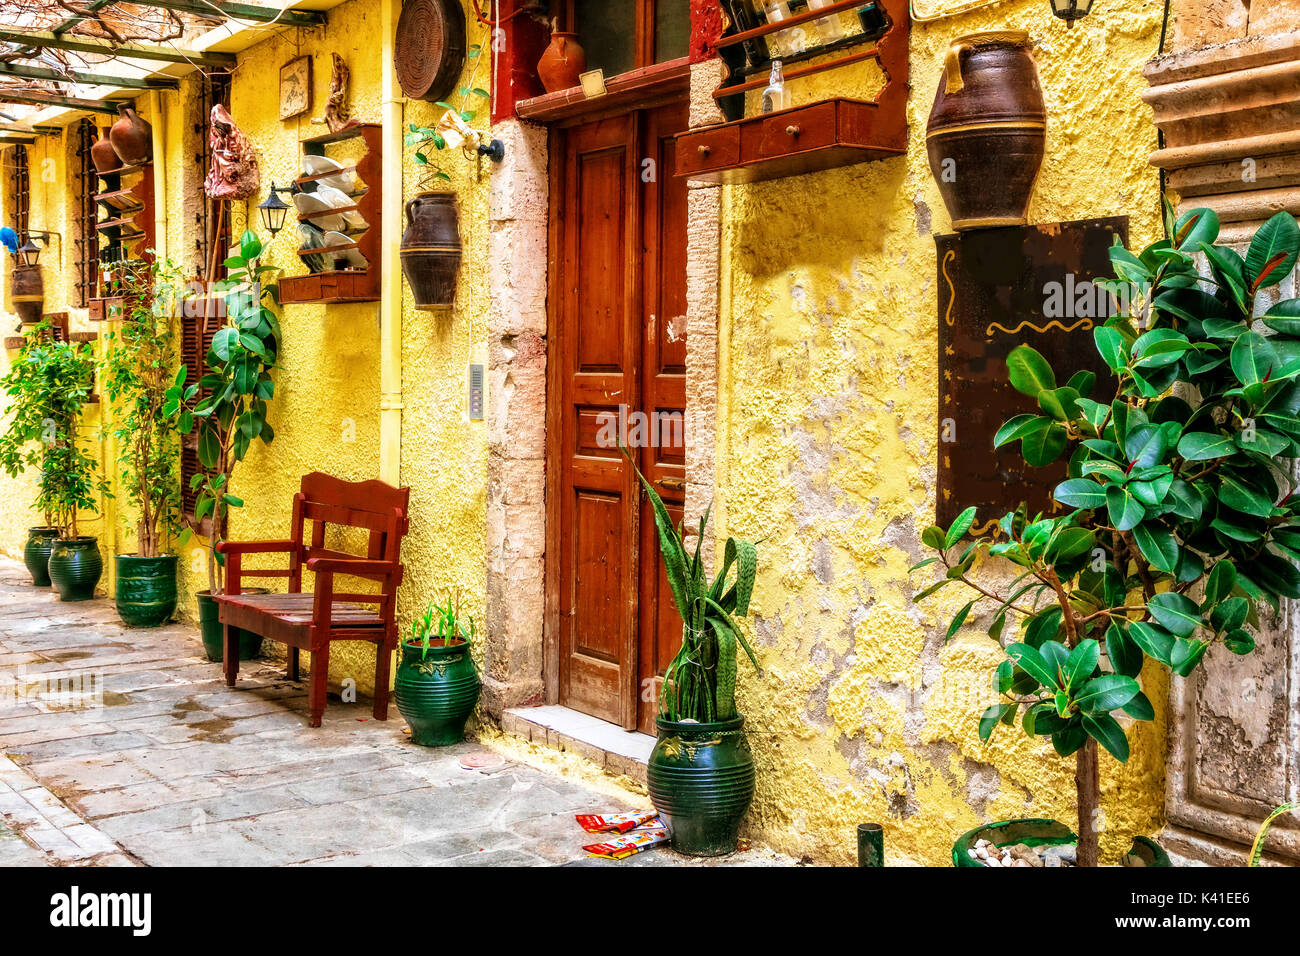 Charmantes rues colorées de la vieille ville de Réthymnon. L'île de Crète, Grèce Banque D'Images